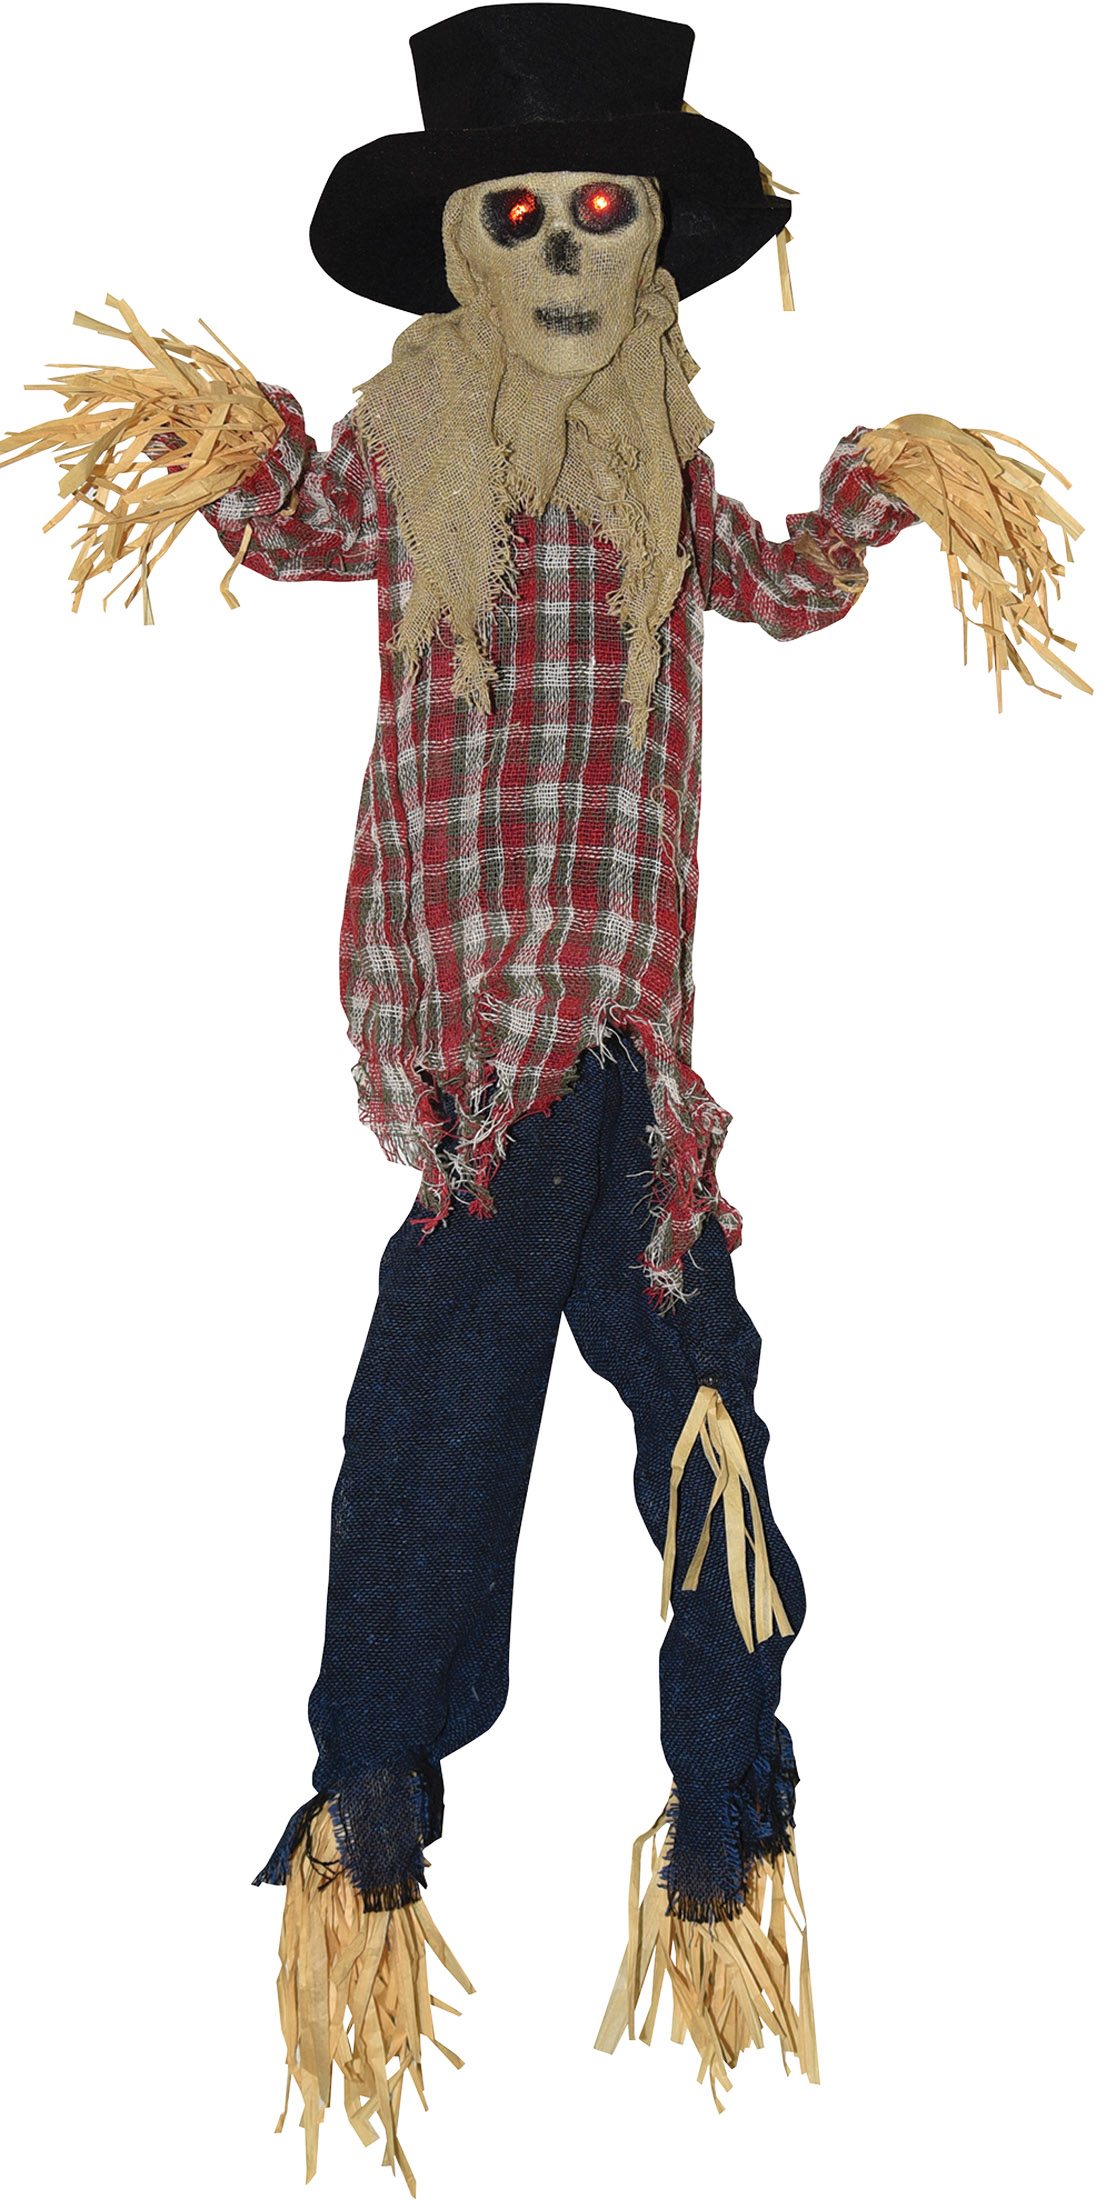 Kicking Scarecrow